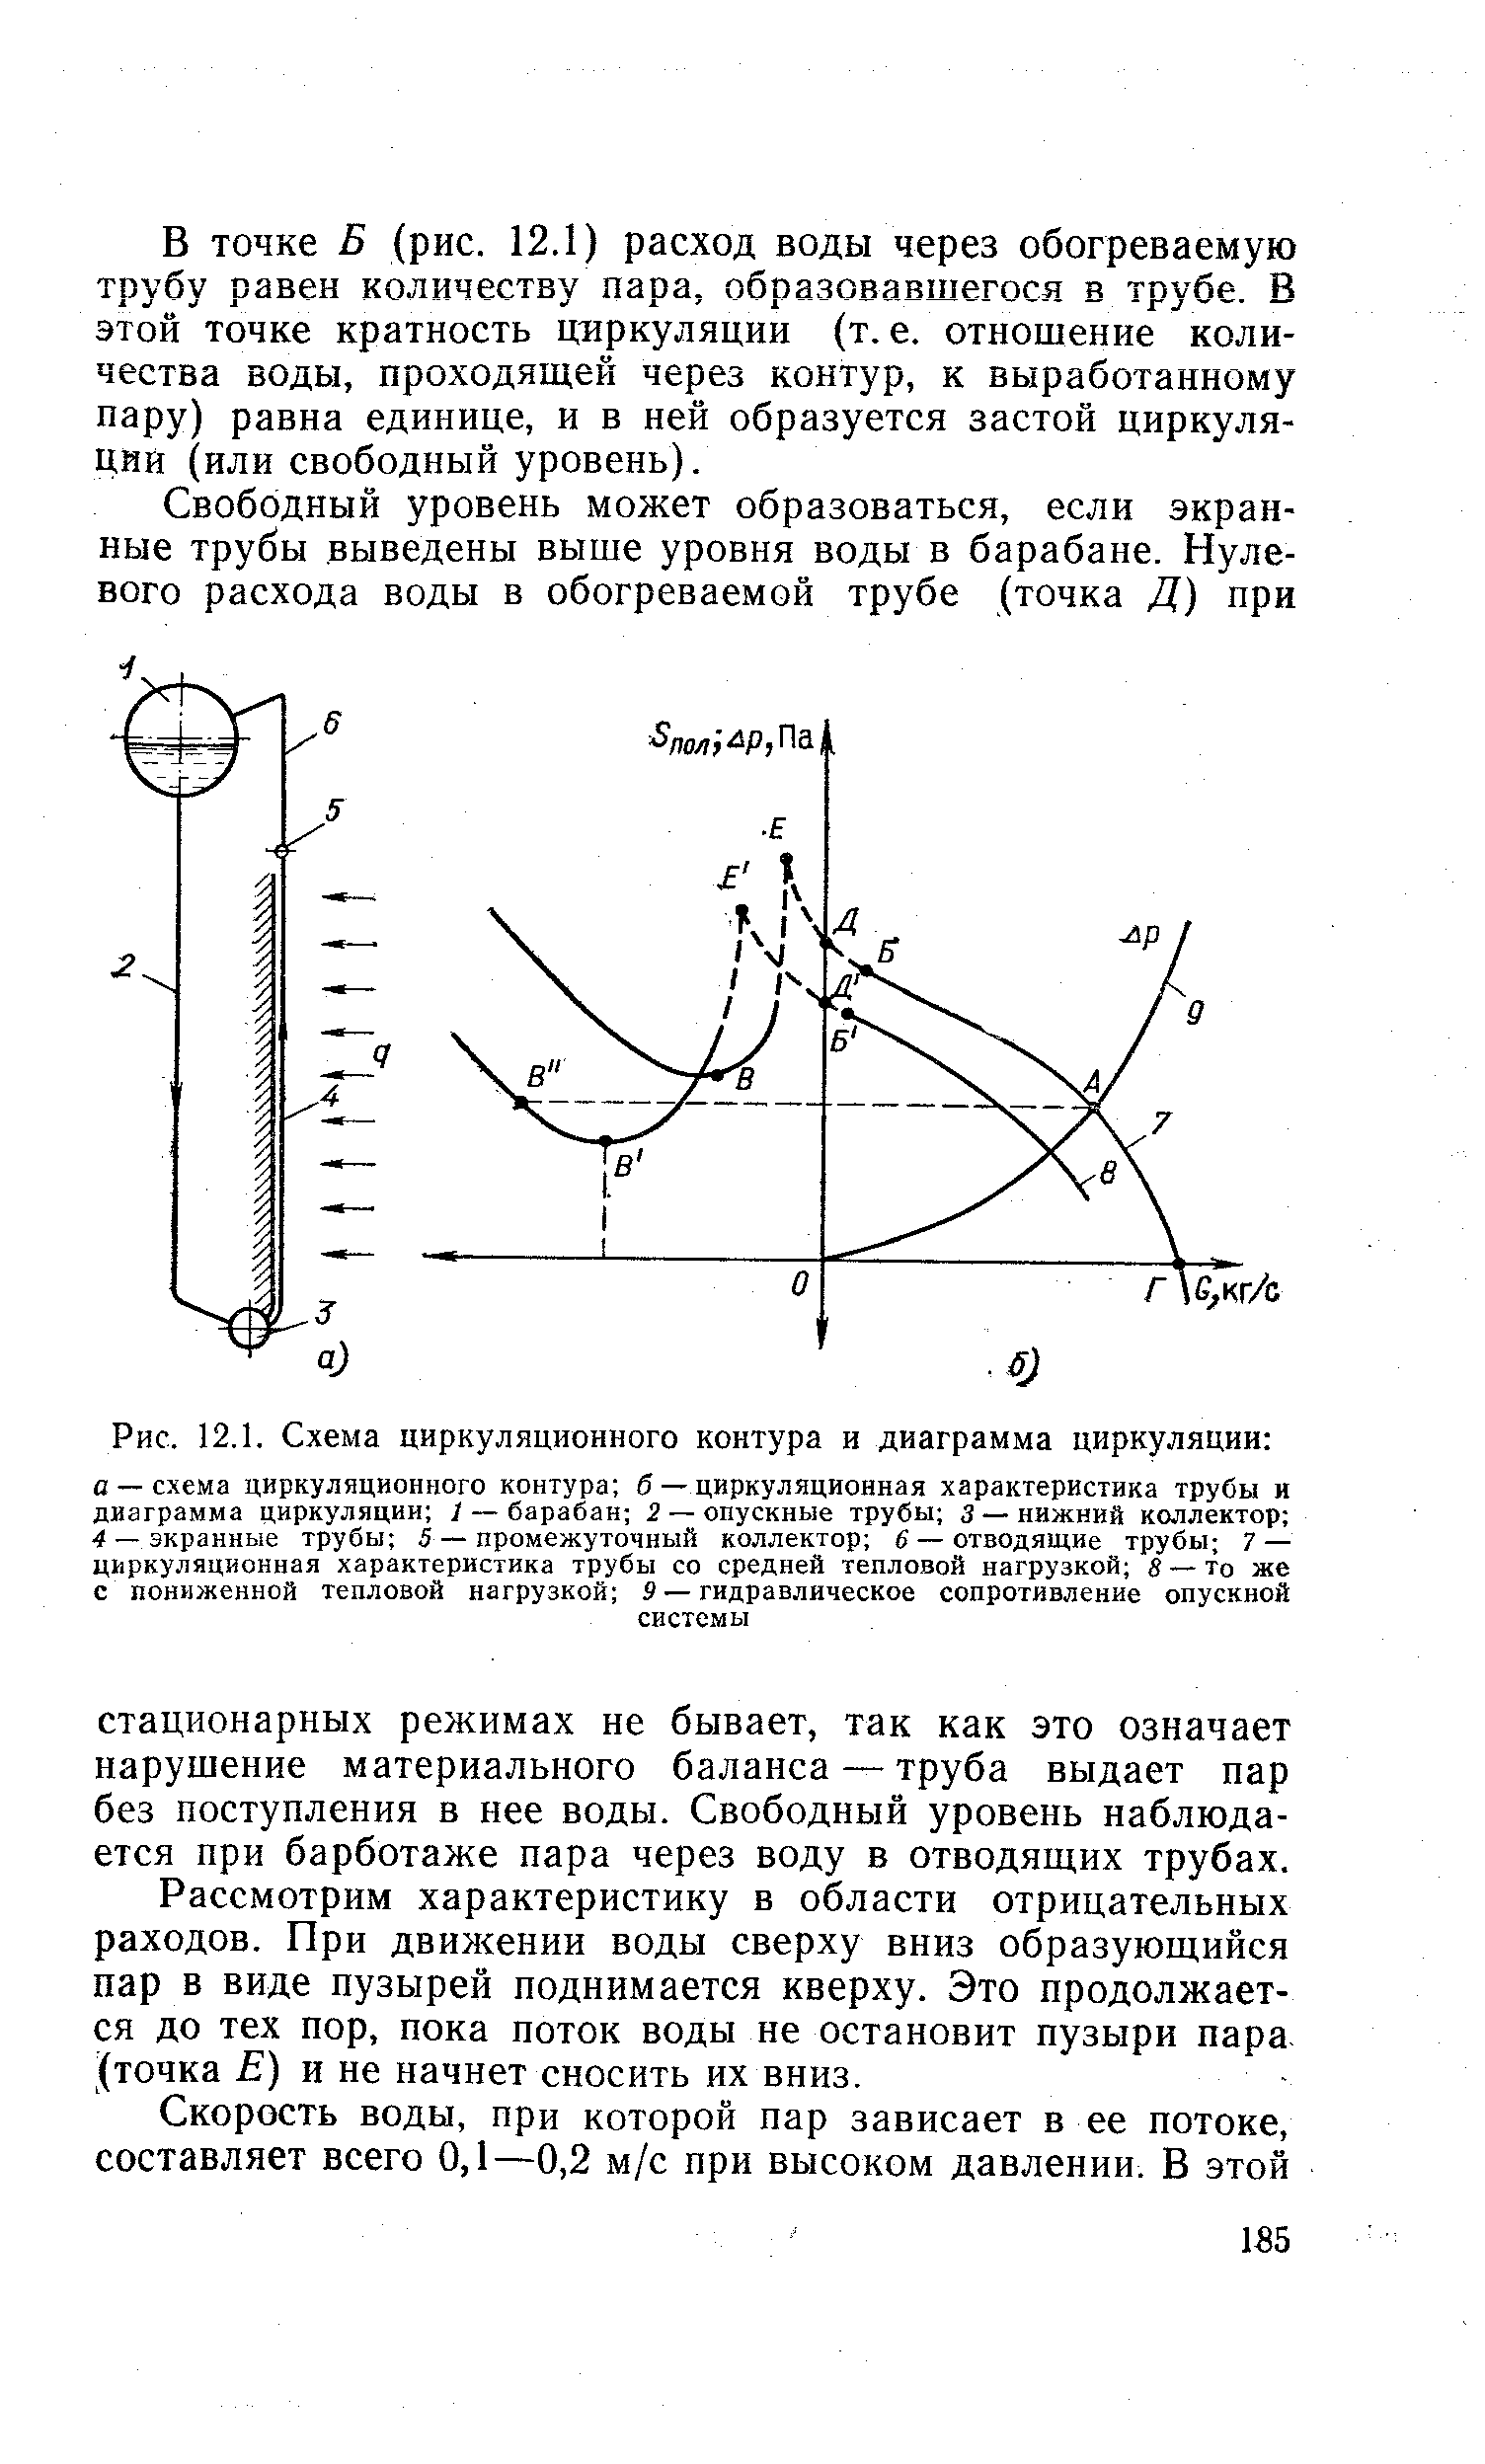 Рис. 12.1. Схема <a href="/info/64960">циркуляционного контура</a> и диаграмма циркуляции 
